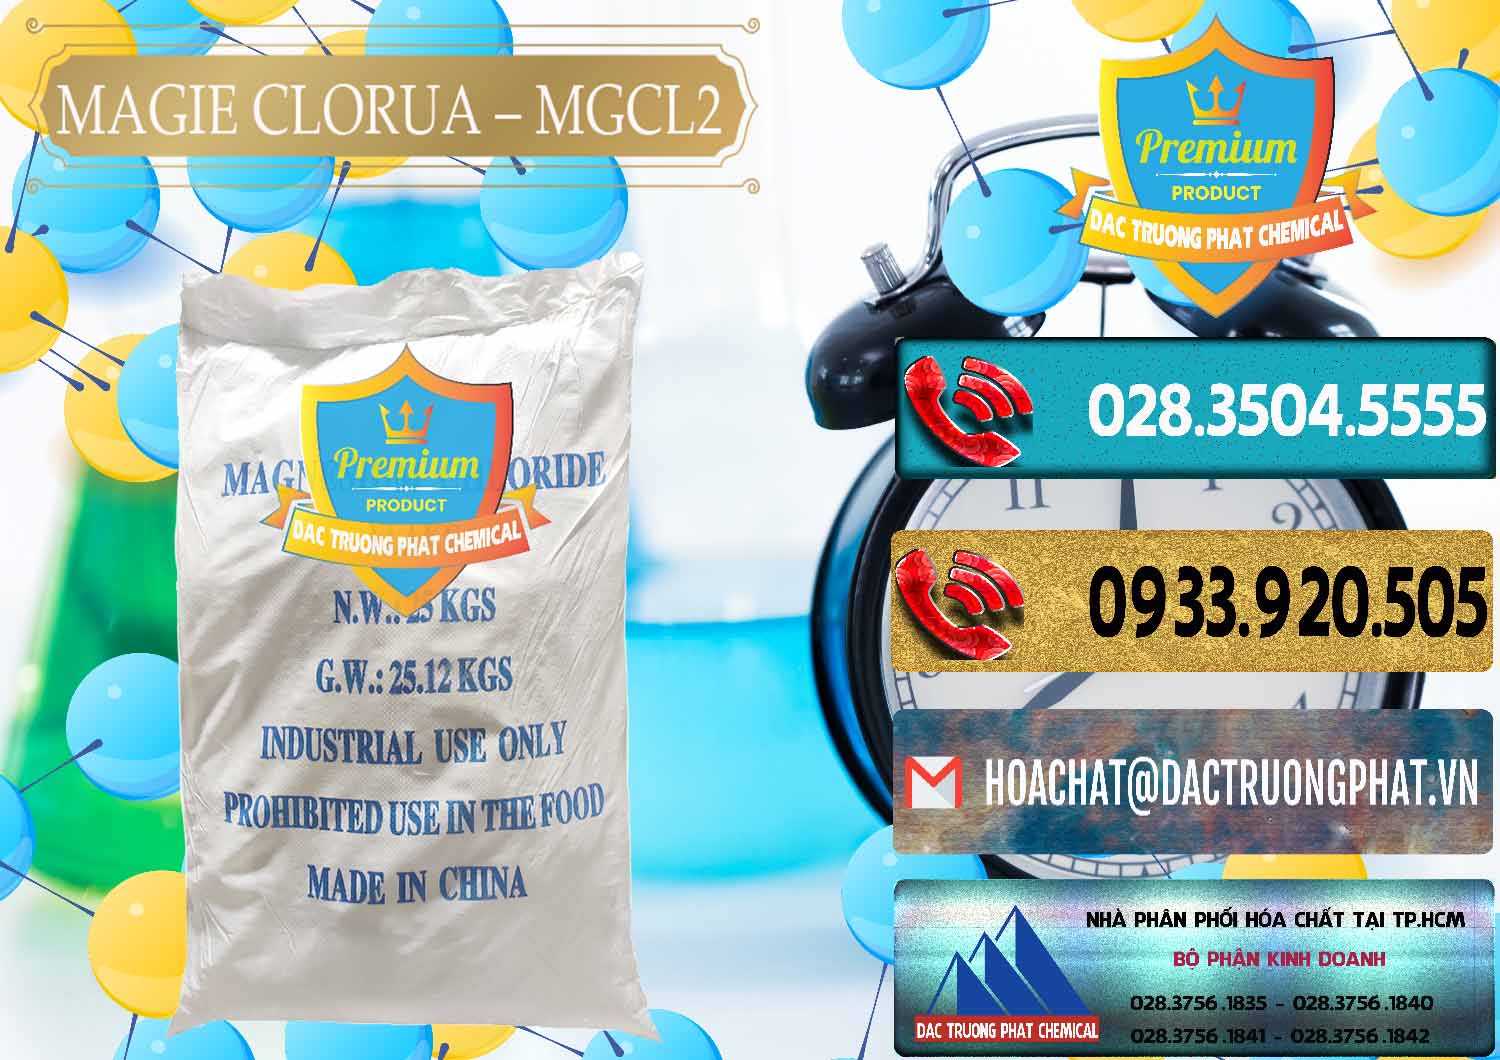 Đơn vị chuyên bán & cung cấp Magie Clorua – MGCL2 96% Dạng Vảy Trung Quốc China - 0091 - Đơn vị chuyên nhập khẩu ( cung cấp ) hóa chất tại TP.HCM - hoachatdetnhuom.com